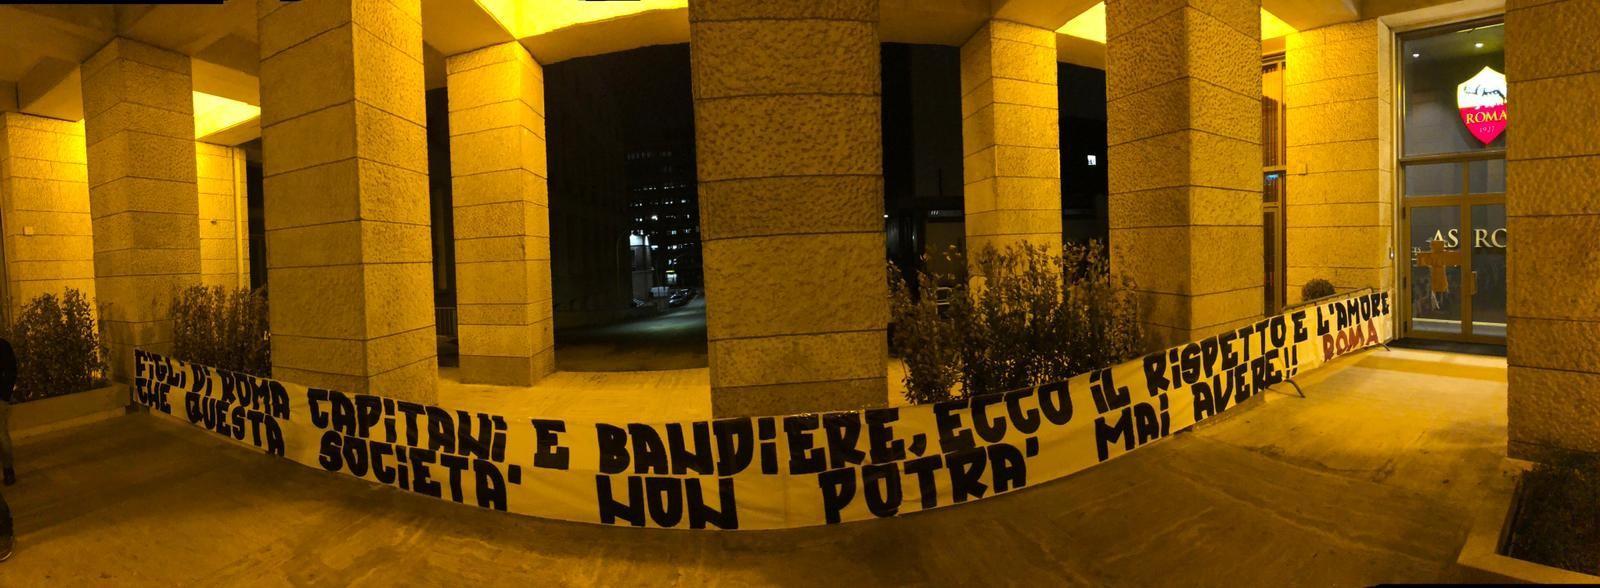 FOTO - Striscione del gruppo Roma esposto davanti alla sede della società giallorossa